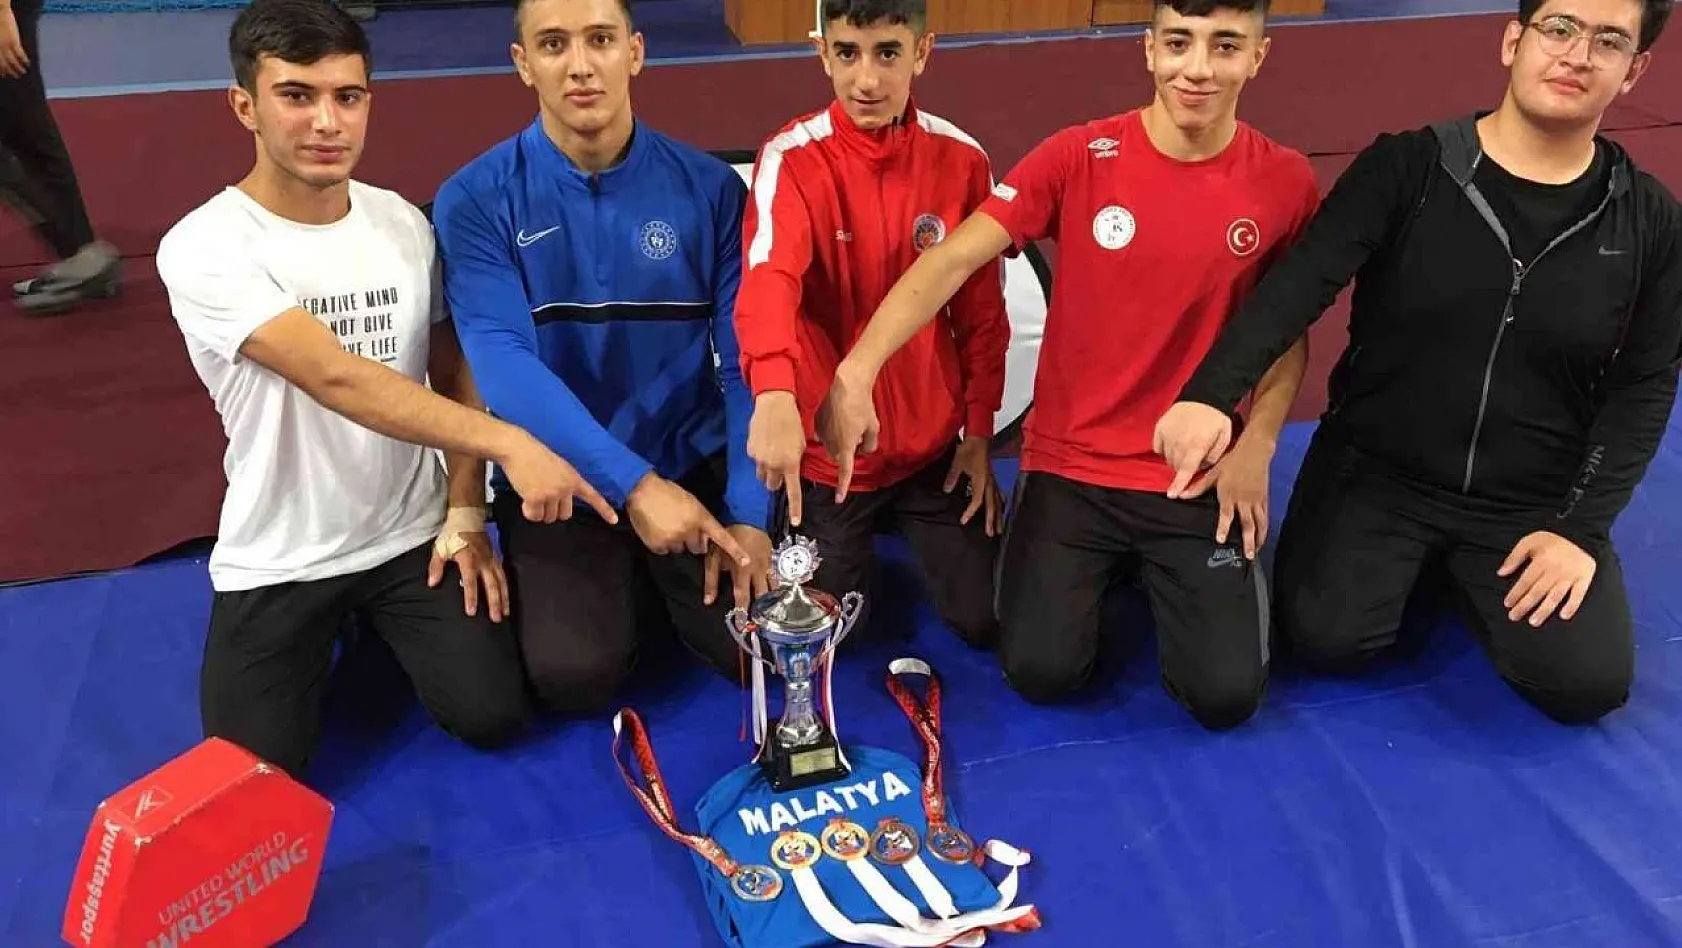 Malatya Gençlik Güreş takımı 1.Lig'e yükselmeyi başardı